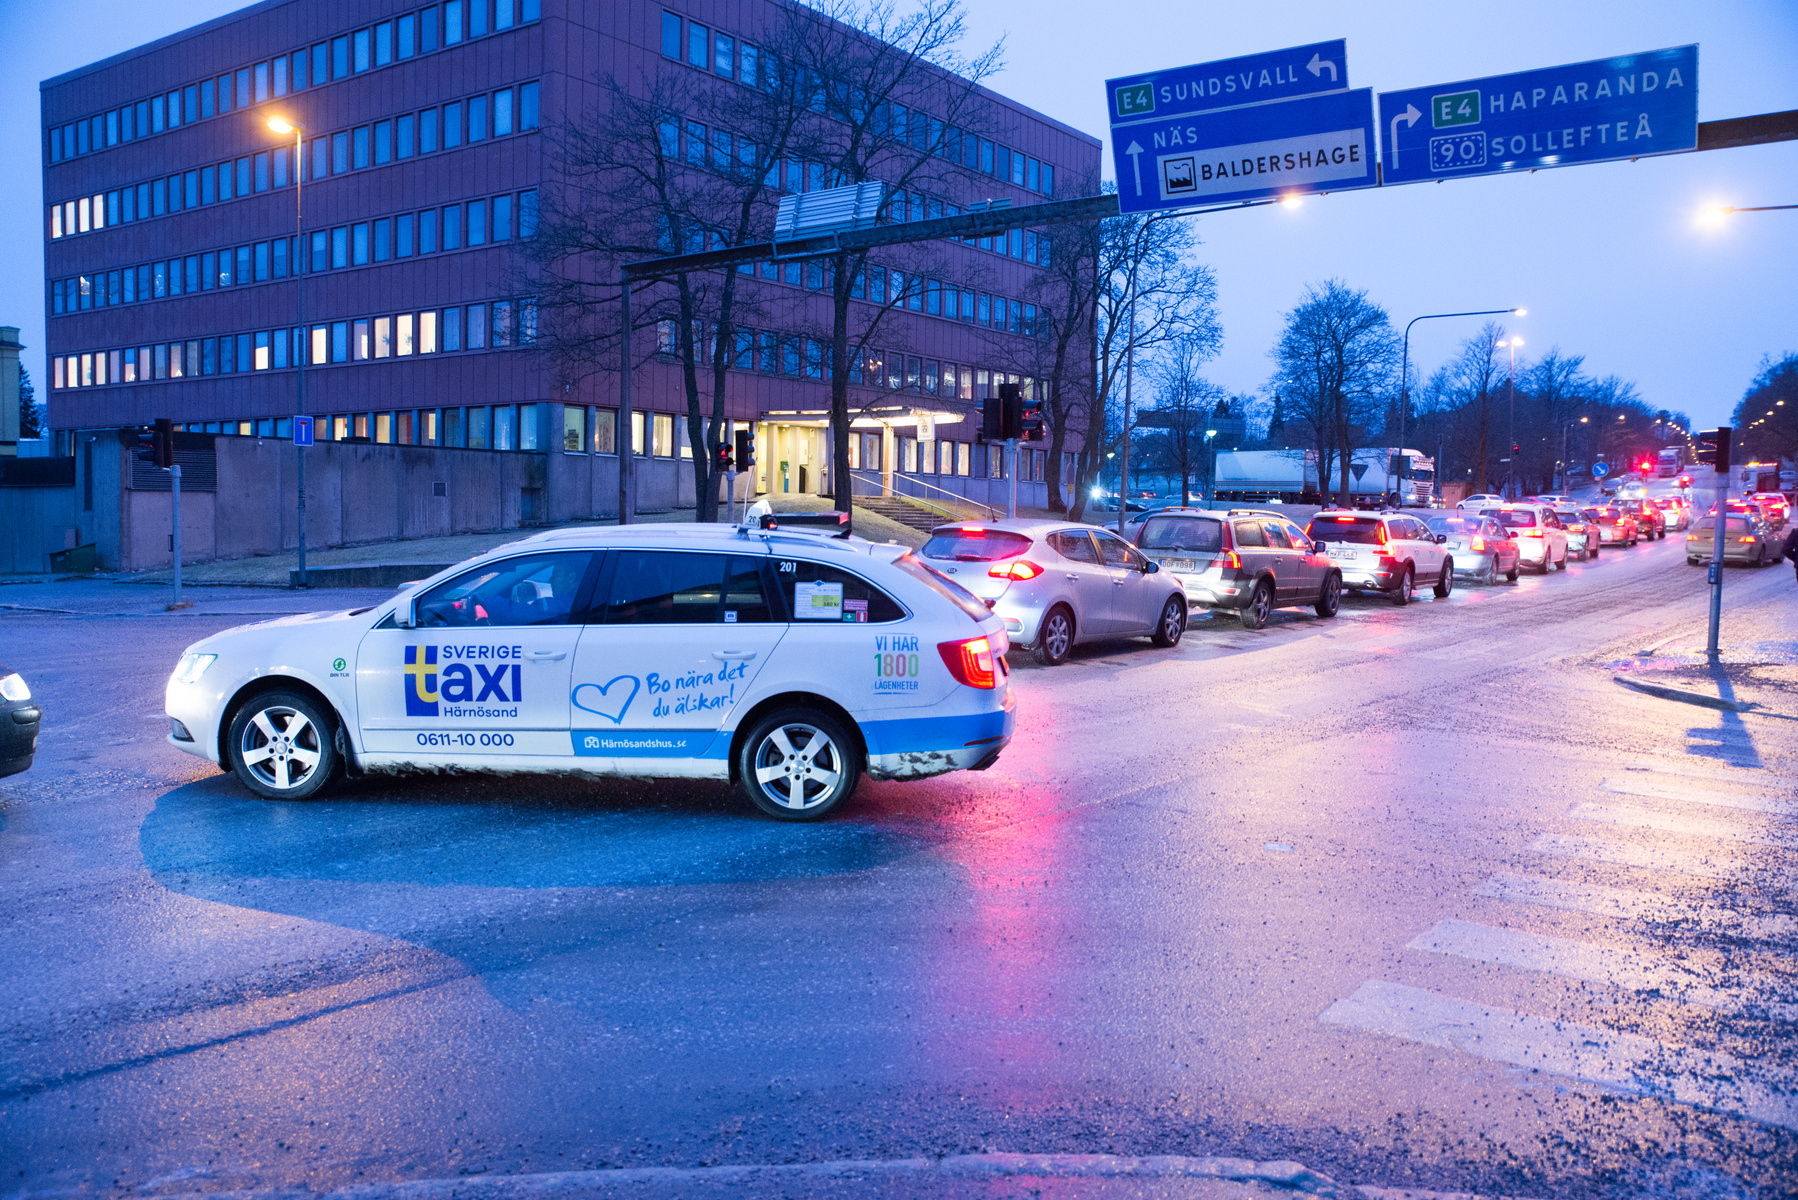 En vit taxibil som kör i en korsning i Sundsvall